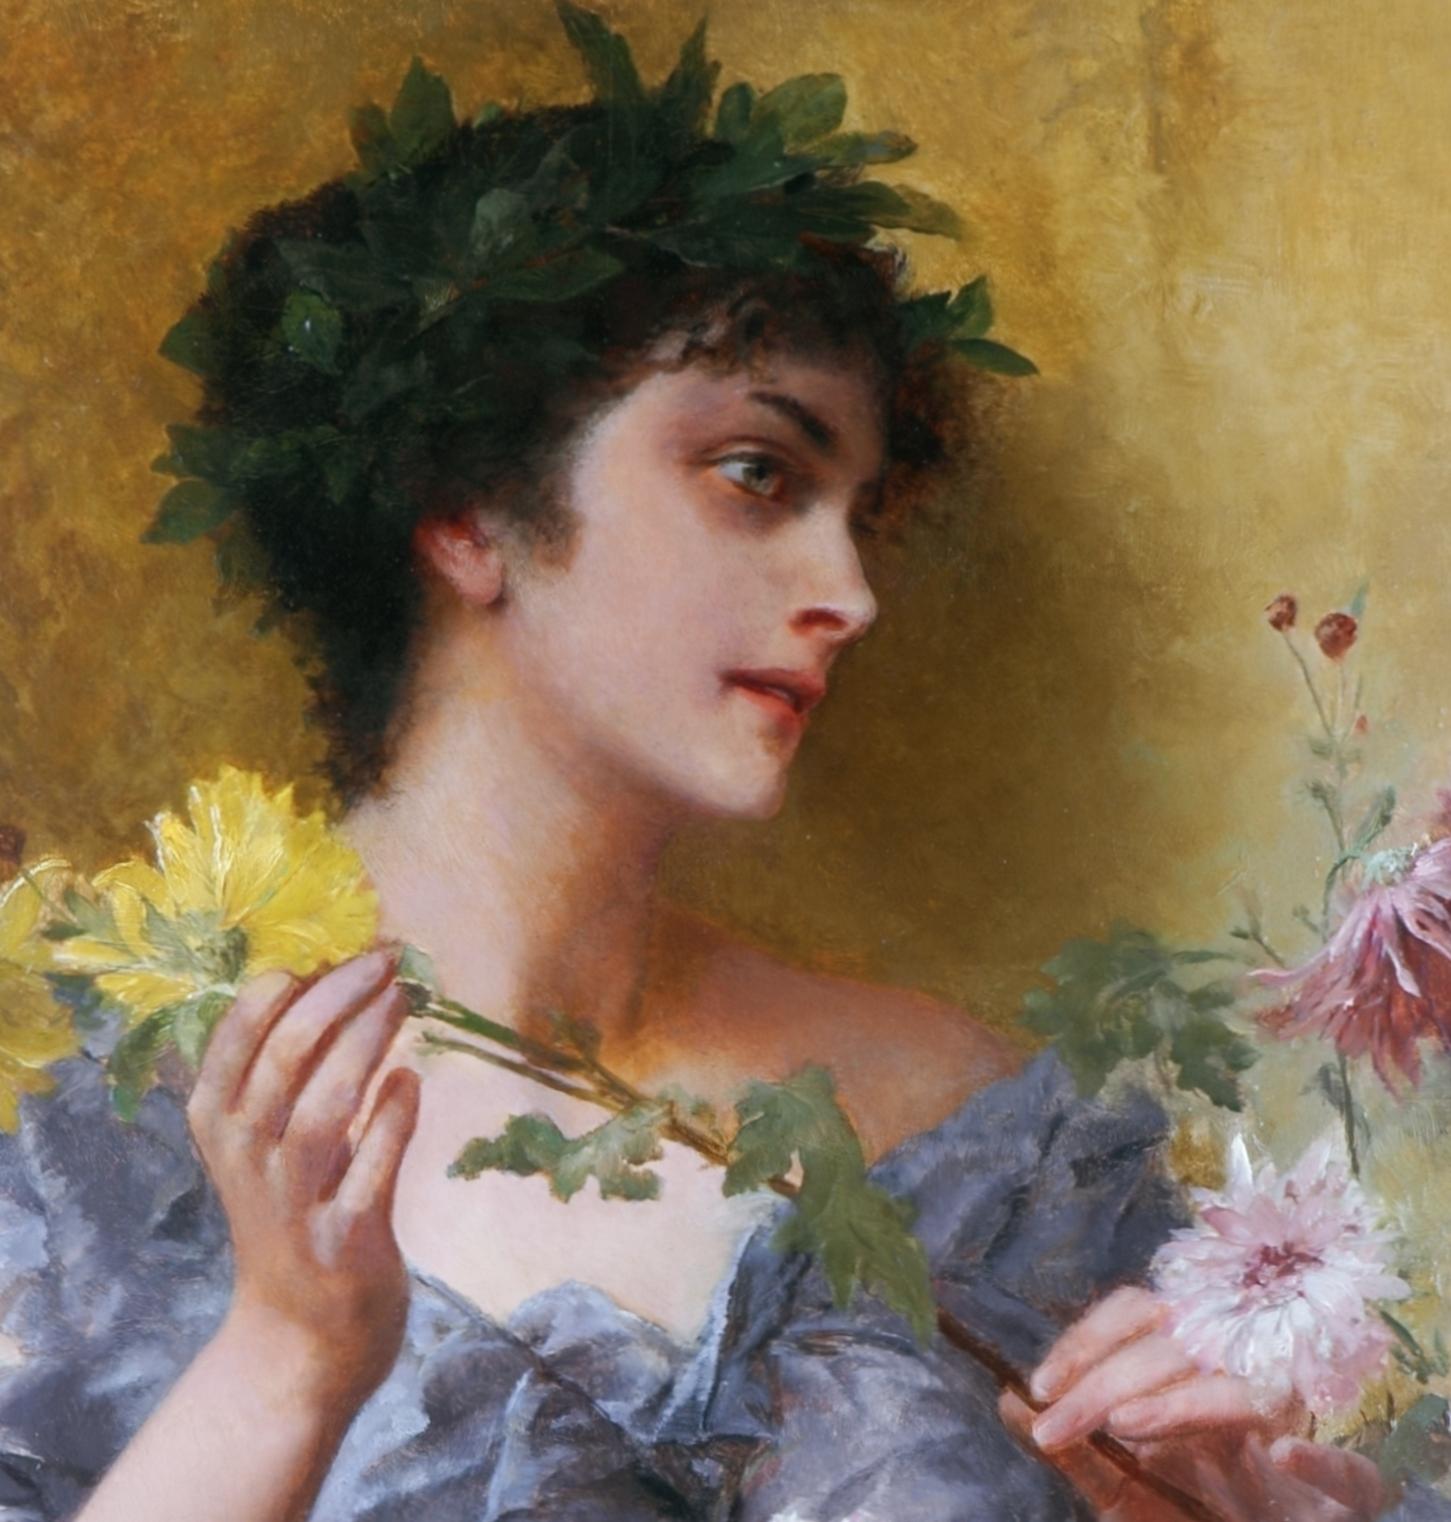 Das Geschenk von Blumen – Painting von Conrad Kiesel